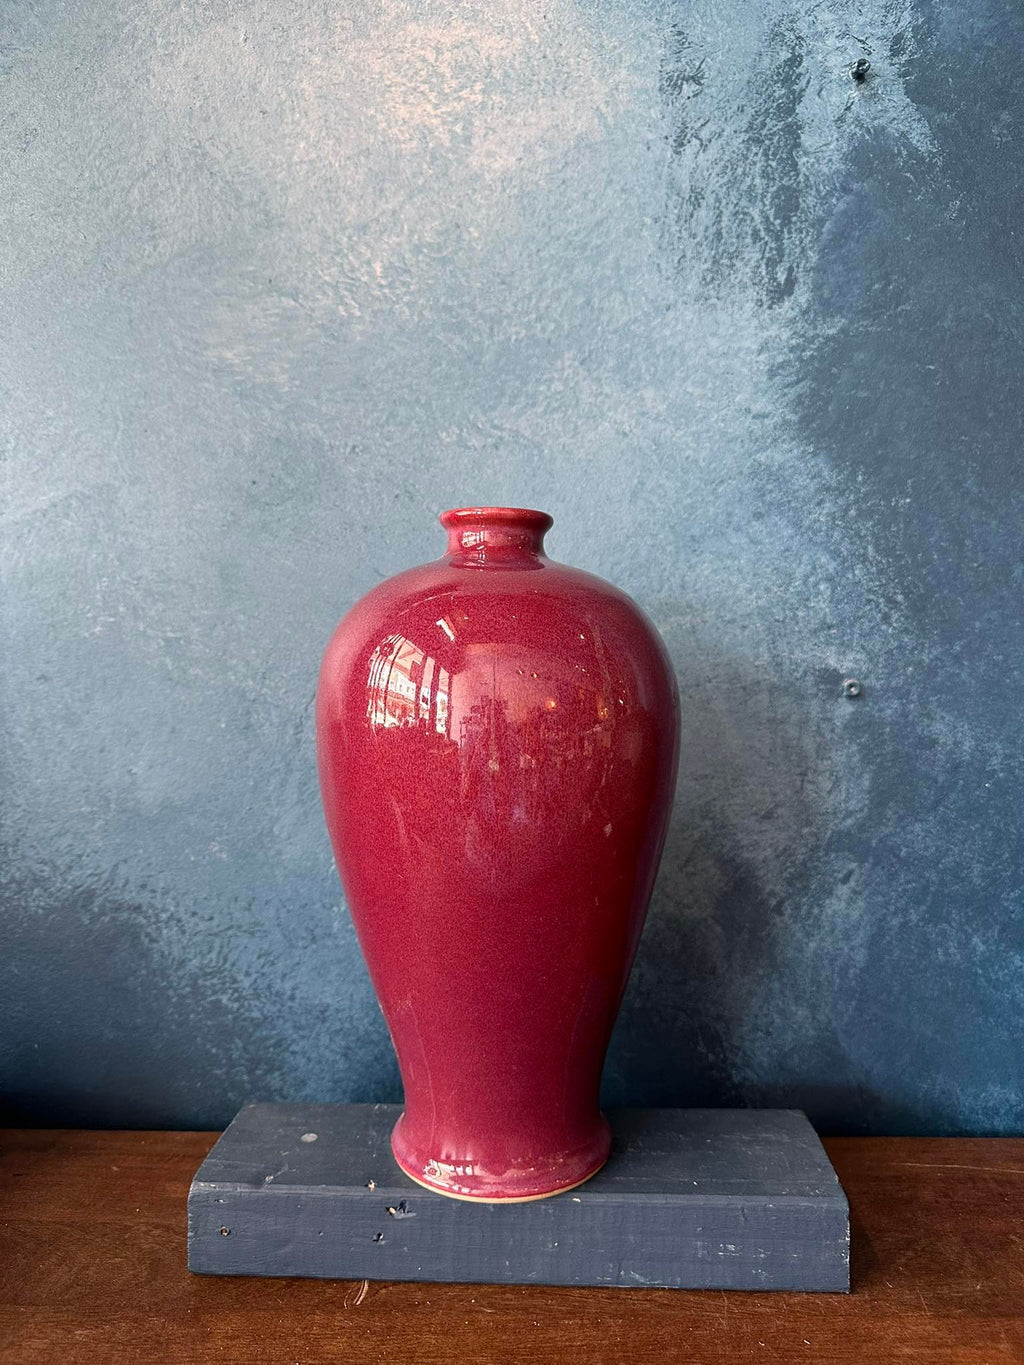 Copper Red Vase IX